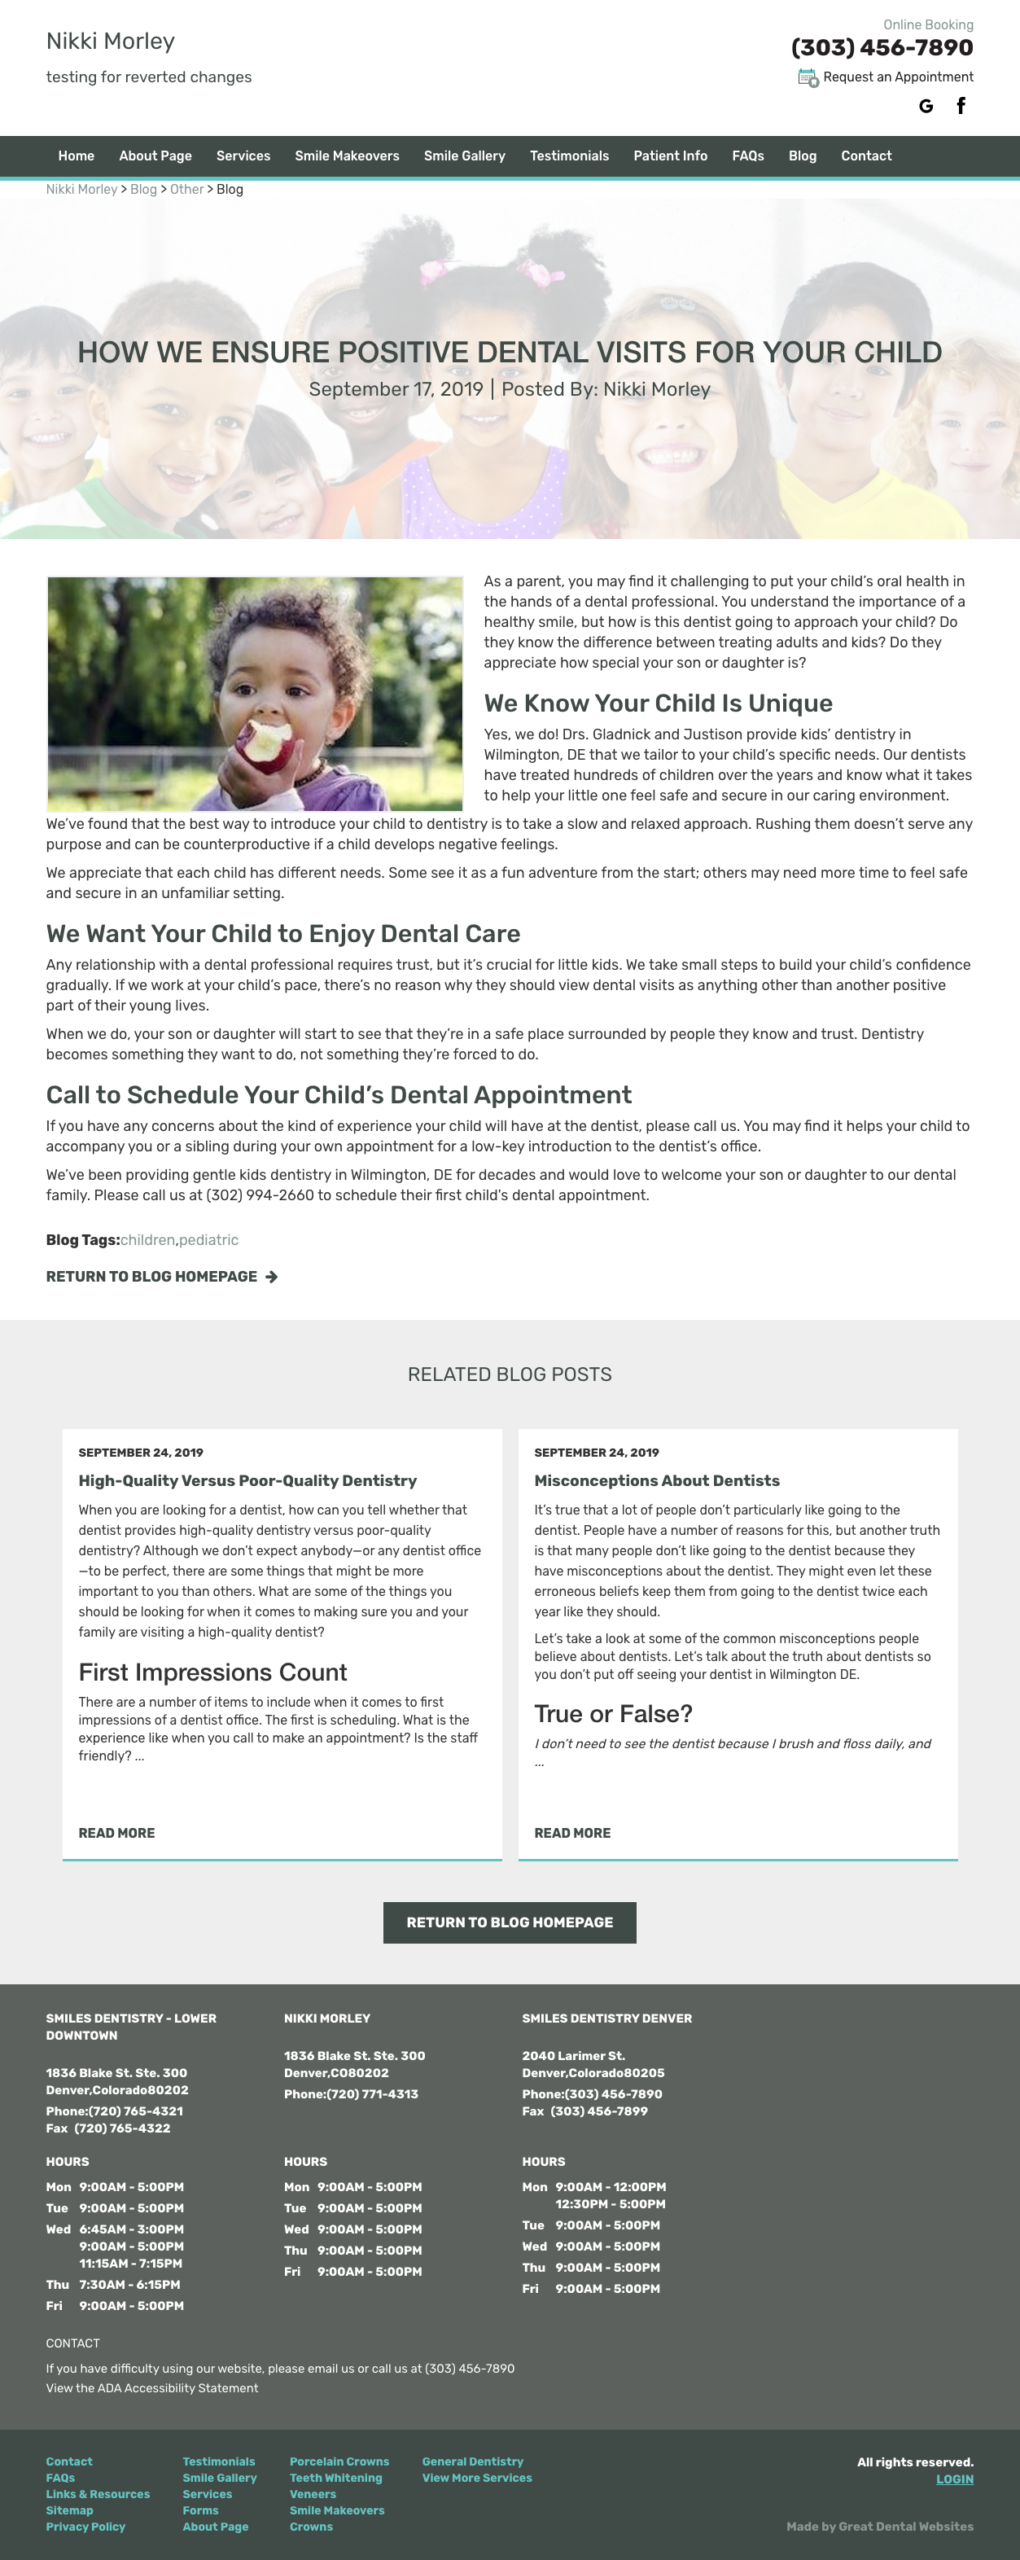 screencapture nikkimorley greatmedicalwebsites blog Other How We Ensure Positive Dental Visits for Your Child 15844 2019 09 24 10 49 58